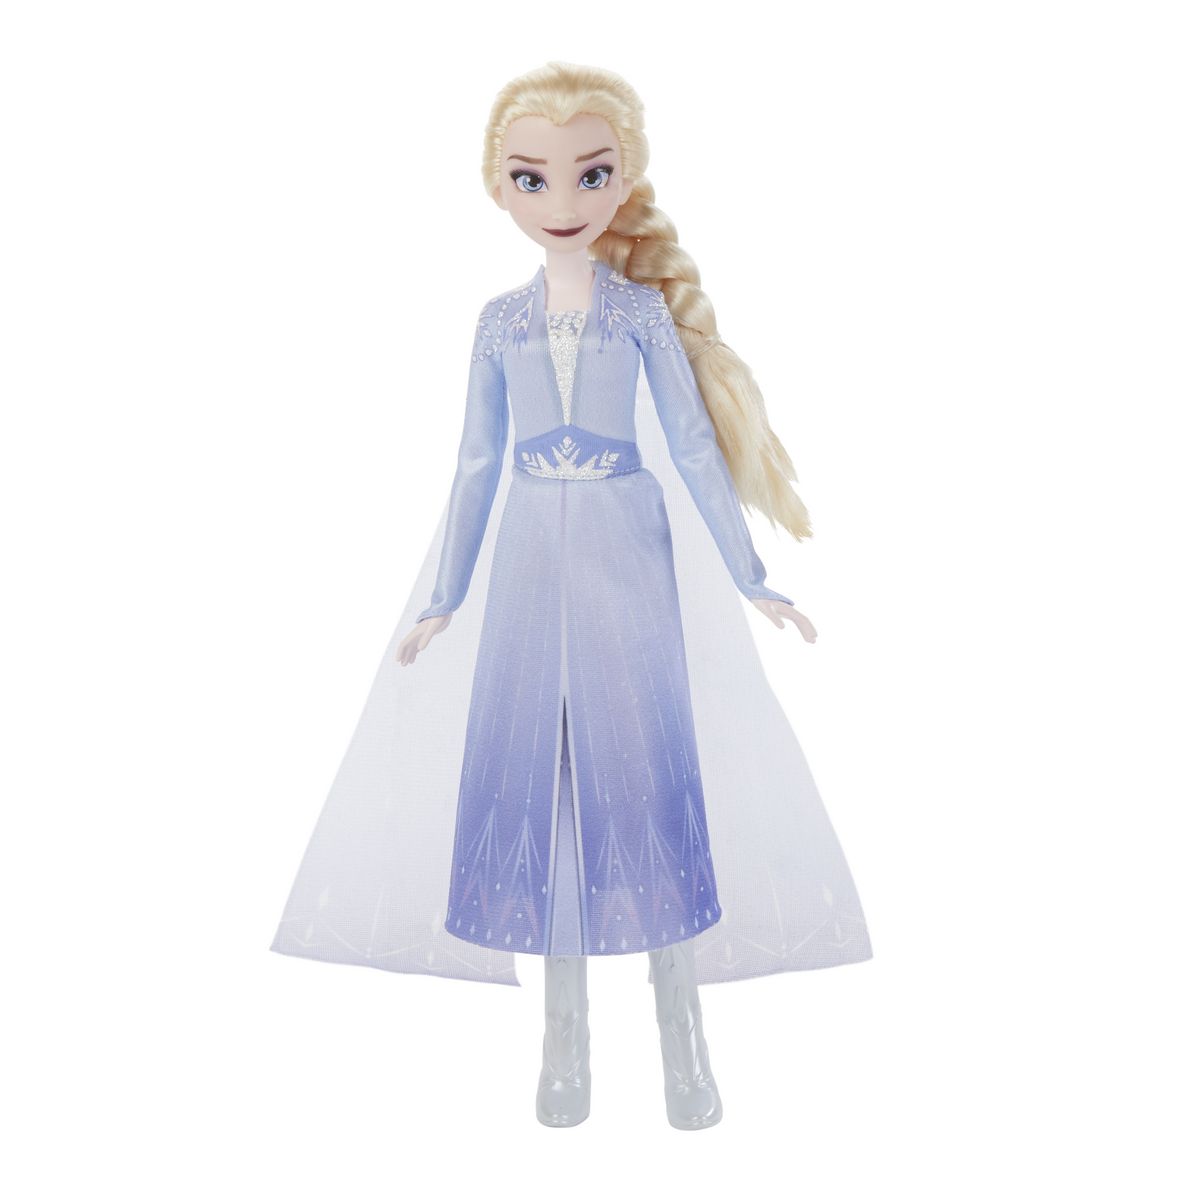 HASBRO Poupée interactive Elsa qui chante - La reine des neiges 2